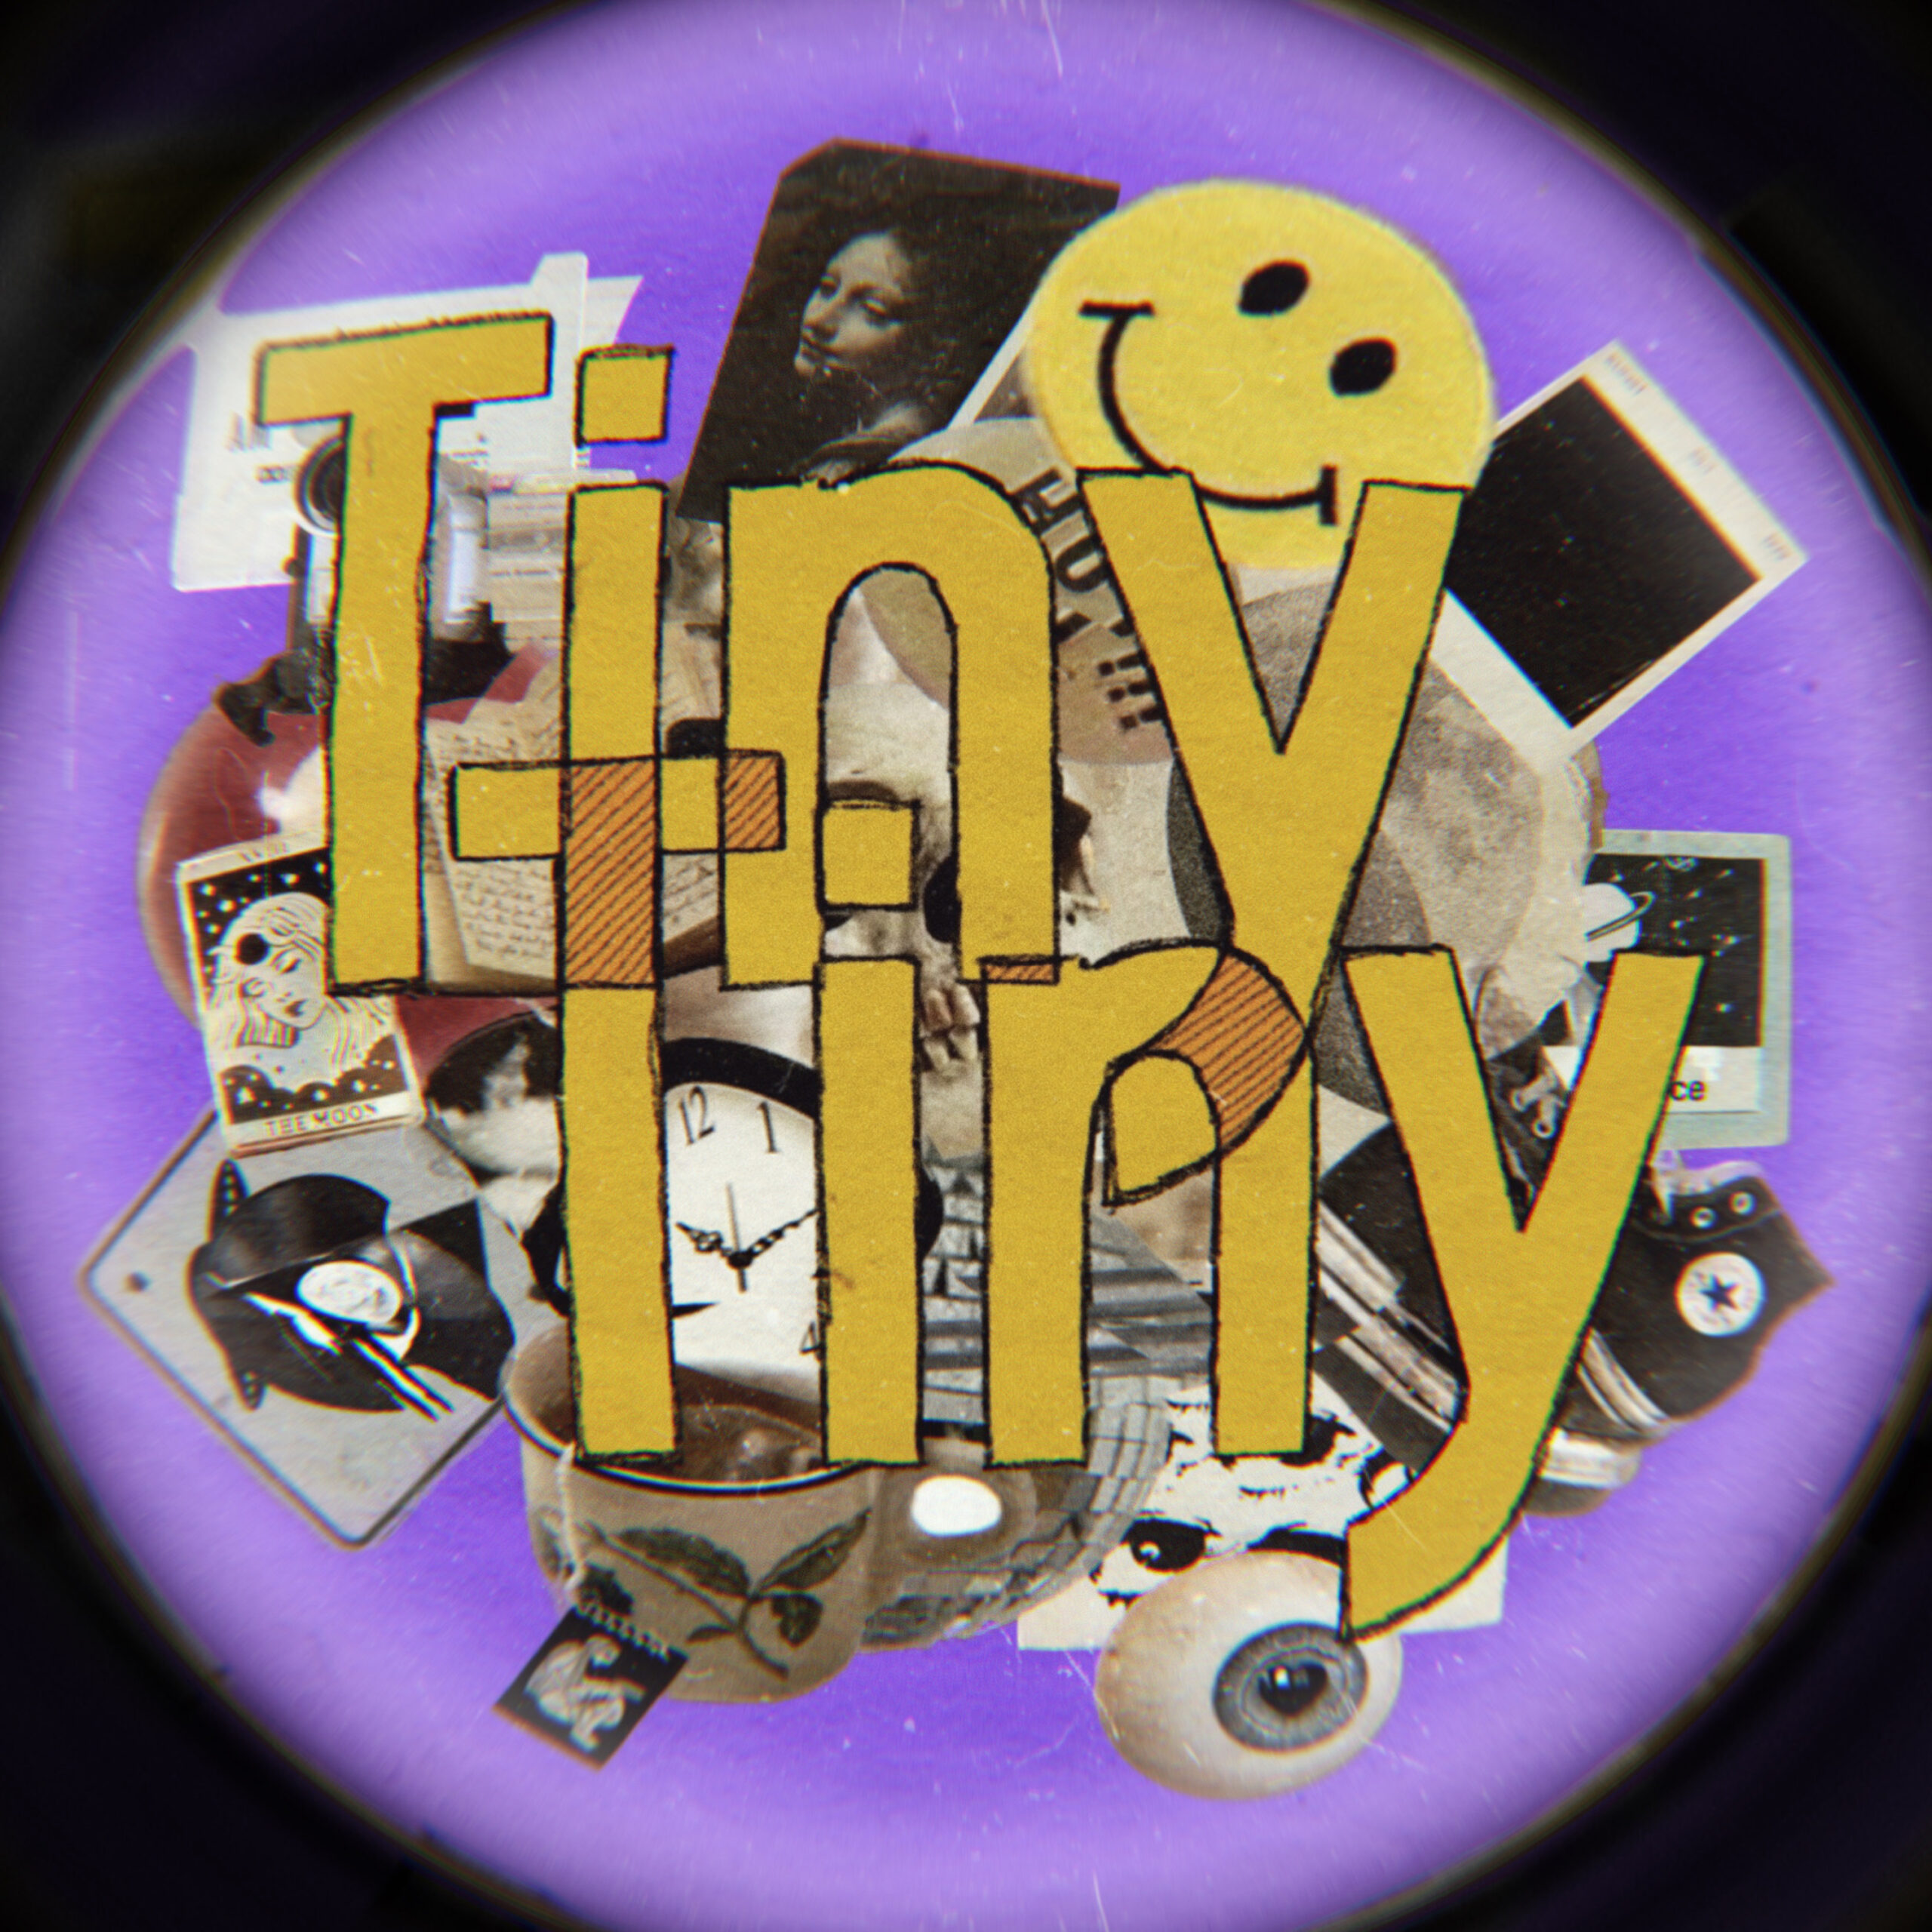 「《NEWS!》19歳のボカロP/シンガーソングライターMILKDOT、疾走感あふれる新曲『Tiny Tiny』を7/14配信リリース」のアイキャッチ画像